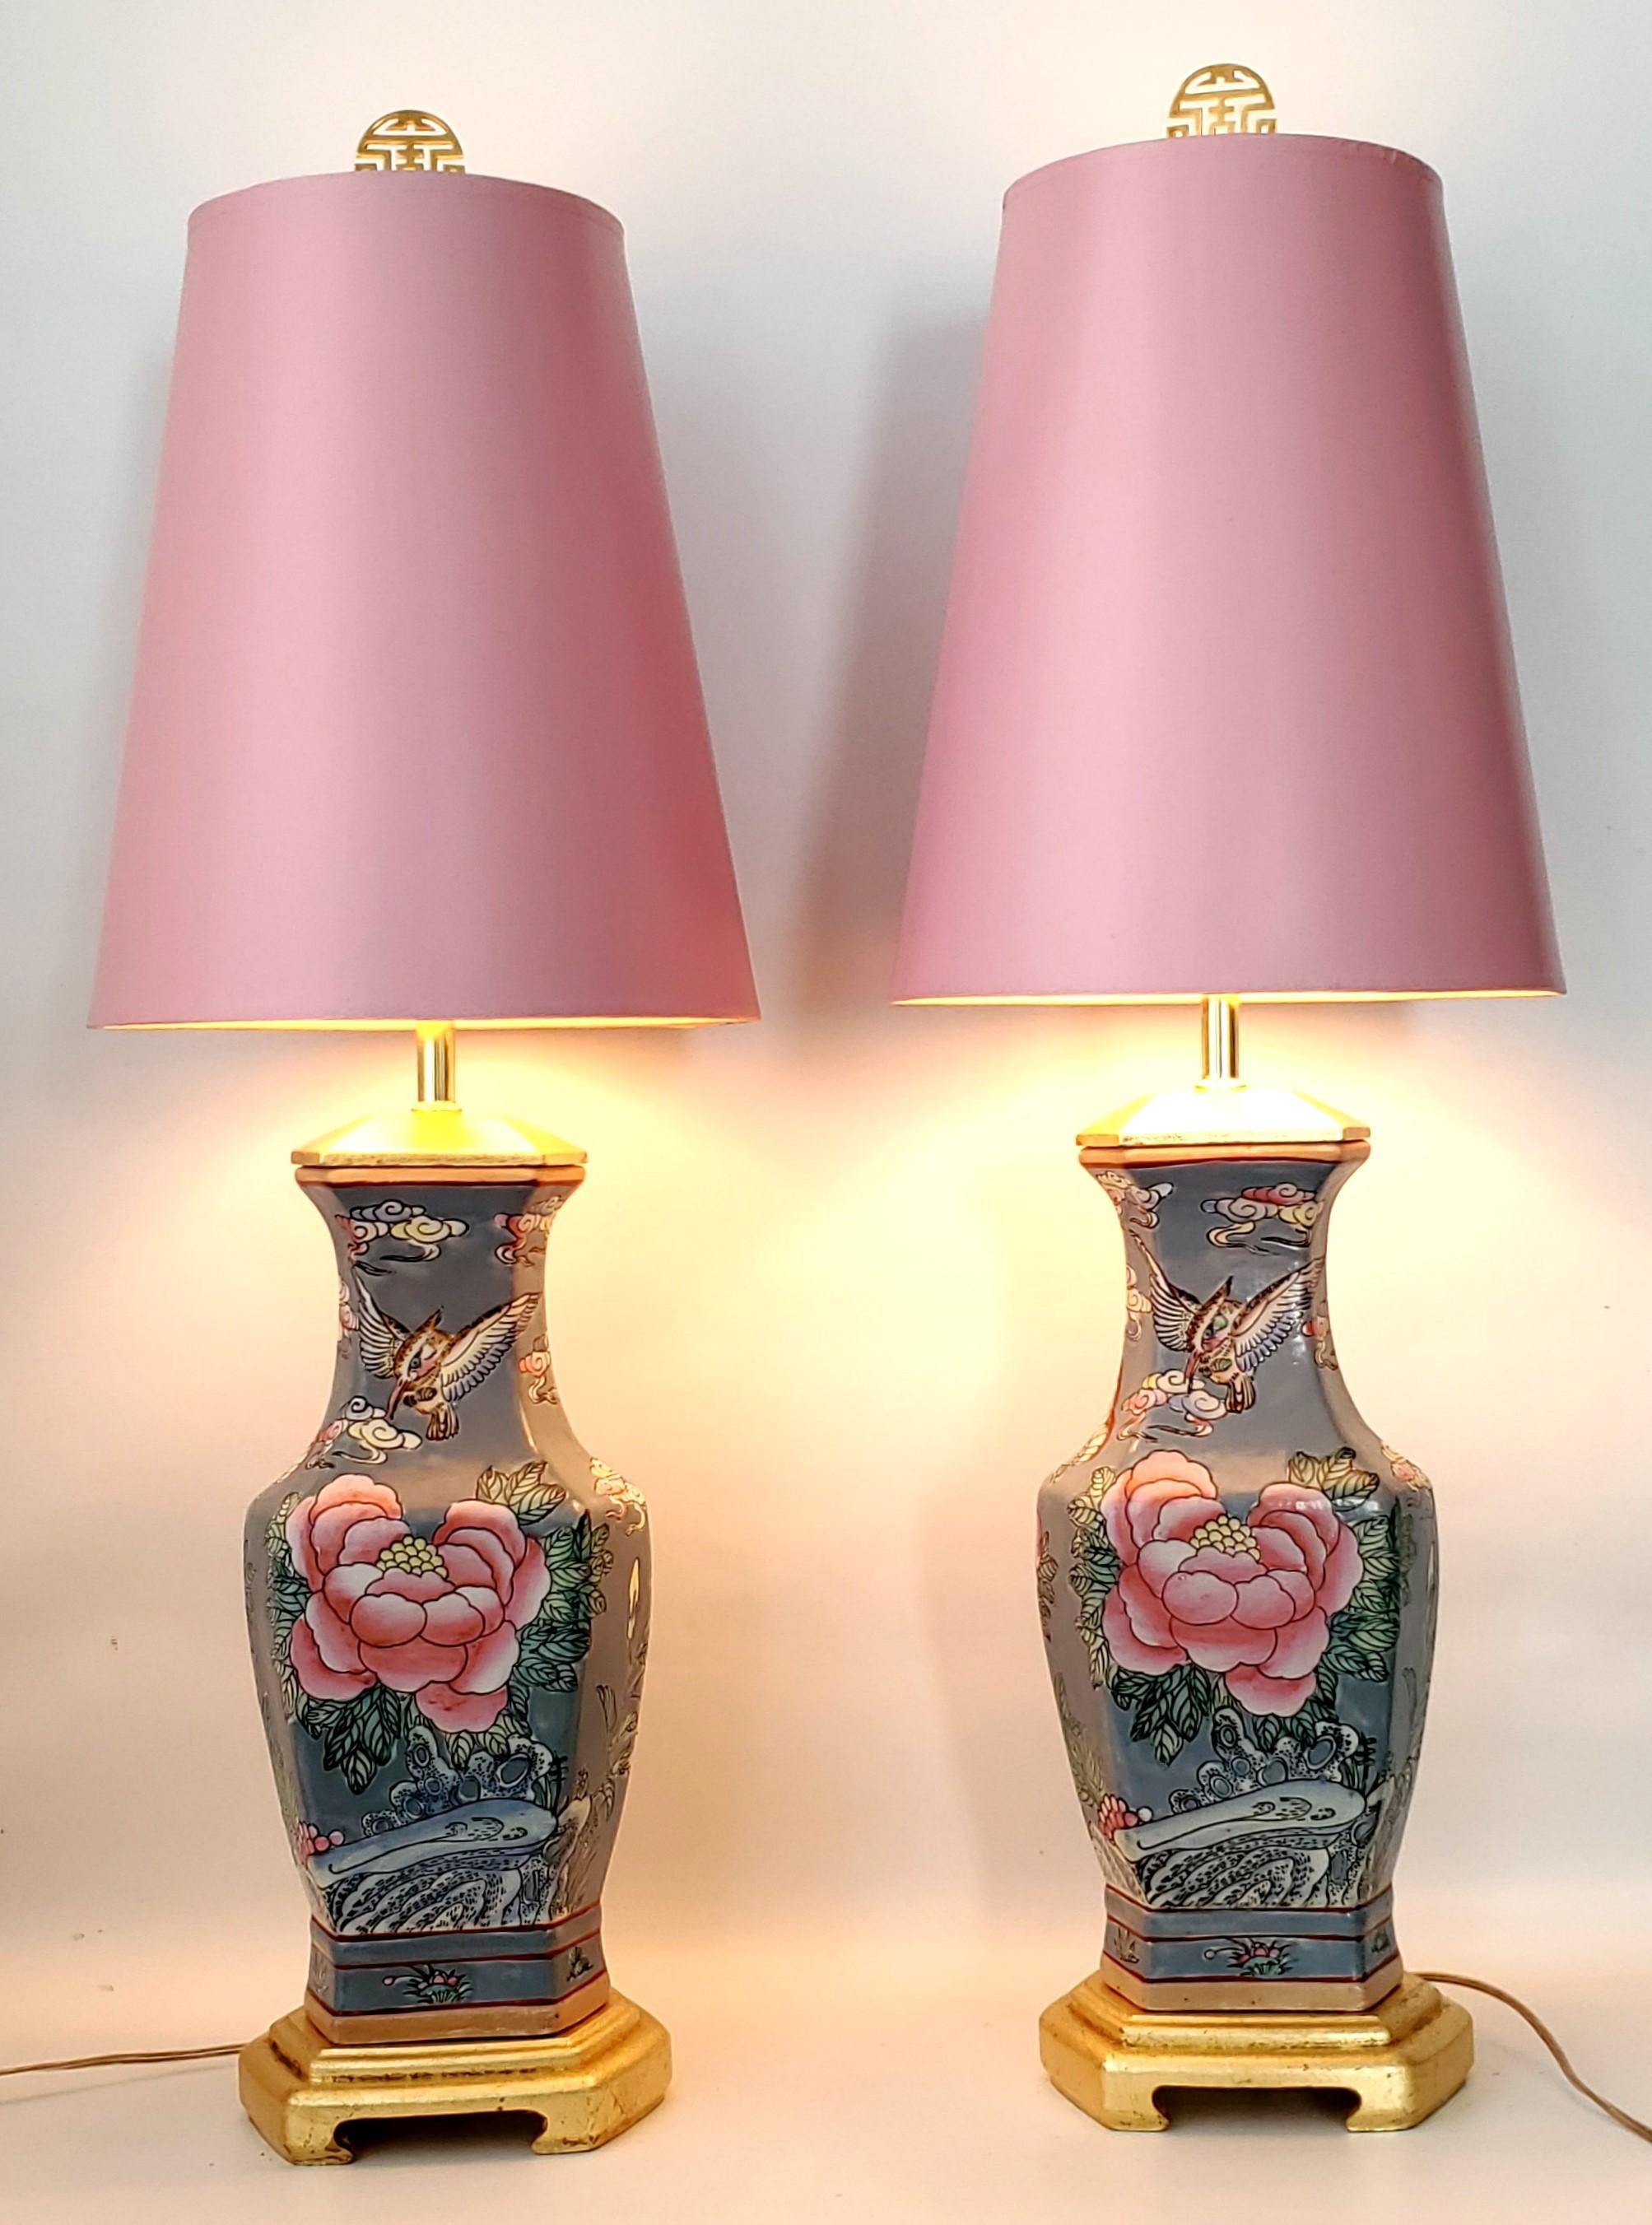 Ein Paar chinesische Porzellan-Tischlampen mit rosa Lampenschirmen im Vintage-Stil. 
Die Körper der Lampen sind grau/blau mit rosa Rosen und Schmetterlingen auf der Vorderseite und lavendelfarbenen Blumen und Schmetterlingen auf der Rückseite. Altes